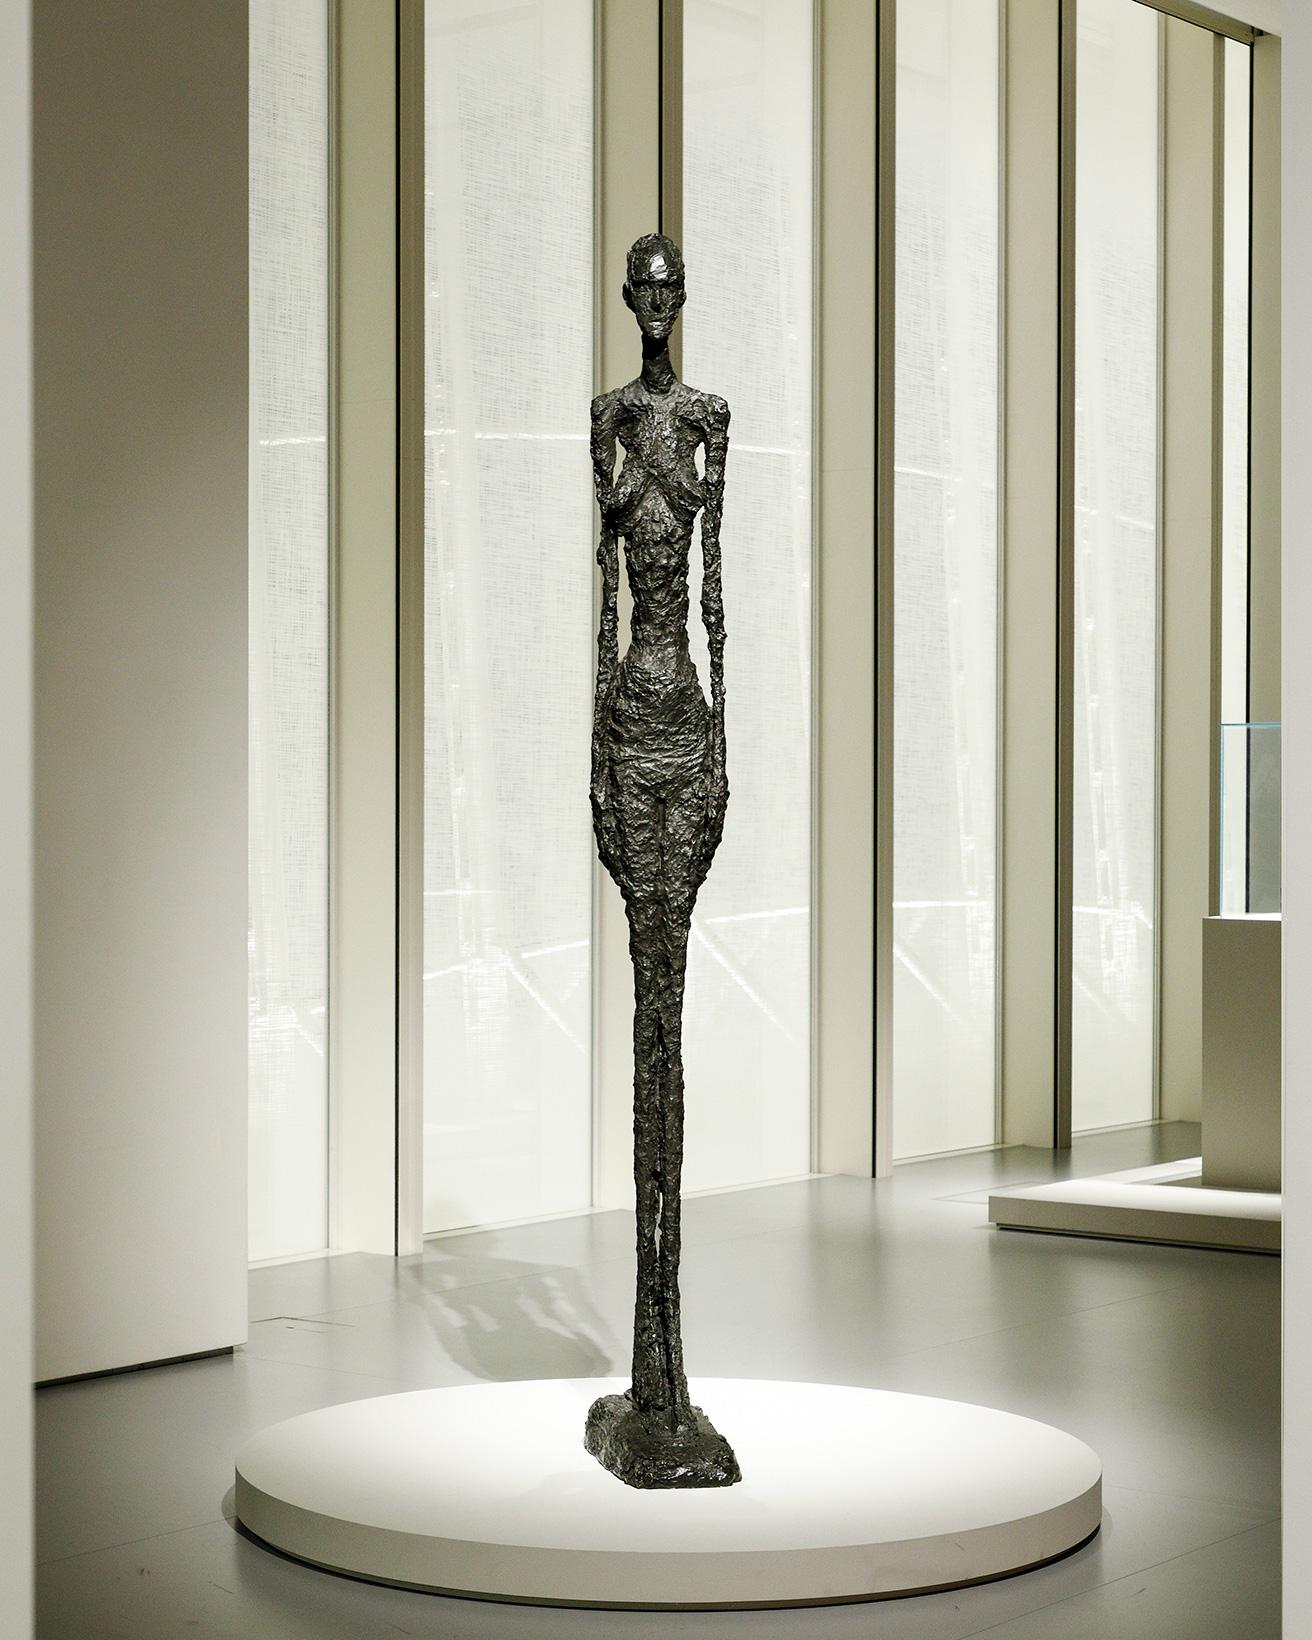 《大きな女性立像Ⅱ》（1960年）。1960年代に制作された一連の《大きな女性立像》は、女性の裸体を扱ったジャコメッティ最後の作品。暗褐色の緑青を施したブロンズ。前傾した台座により、彫刻が上に向かう印象が強調され、削ぎ落とされたようなシルエットと、肥大化した足部によって空間との新たな関係性が生み出されている。